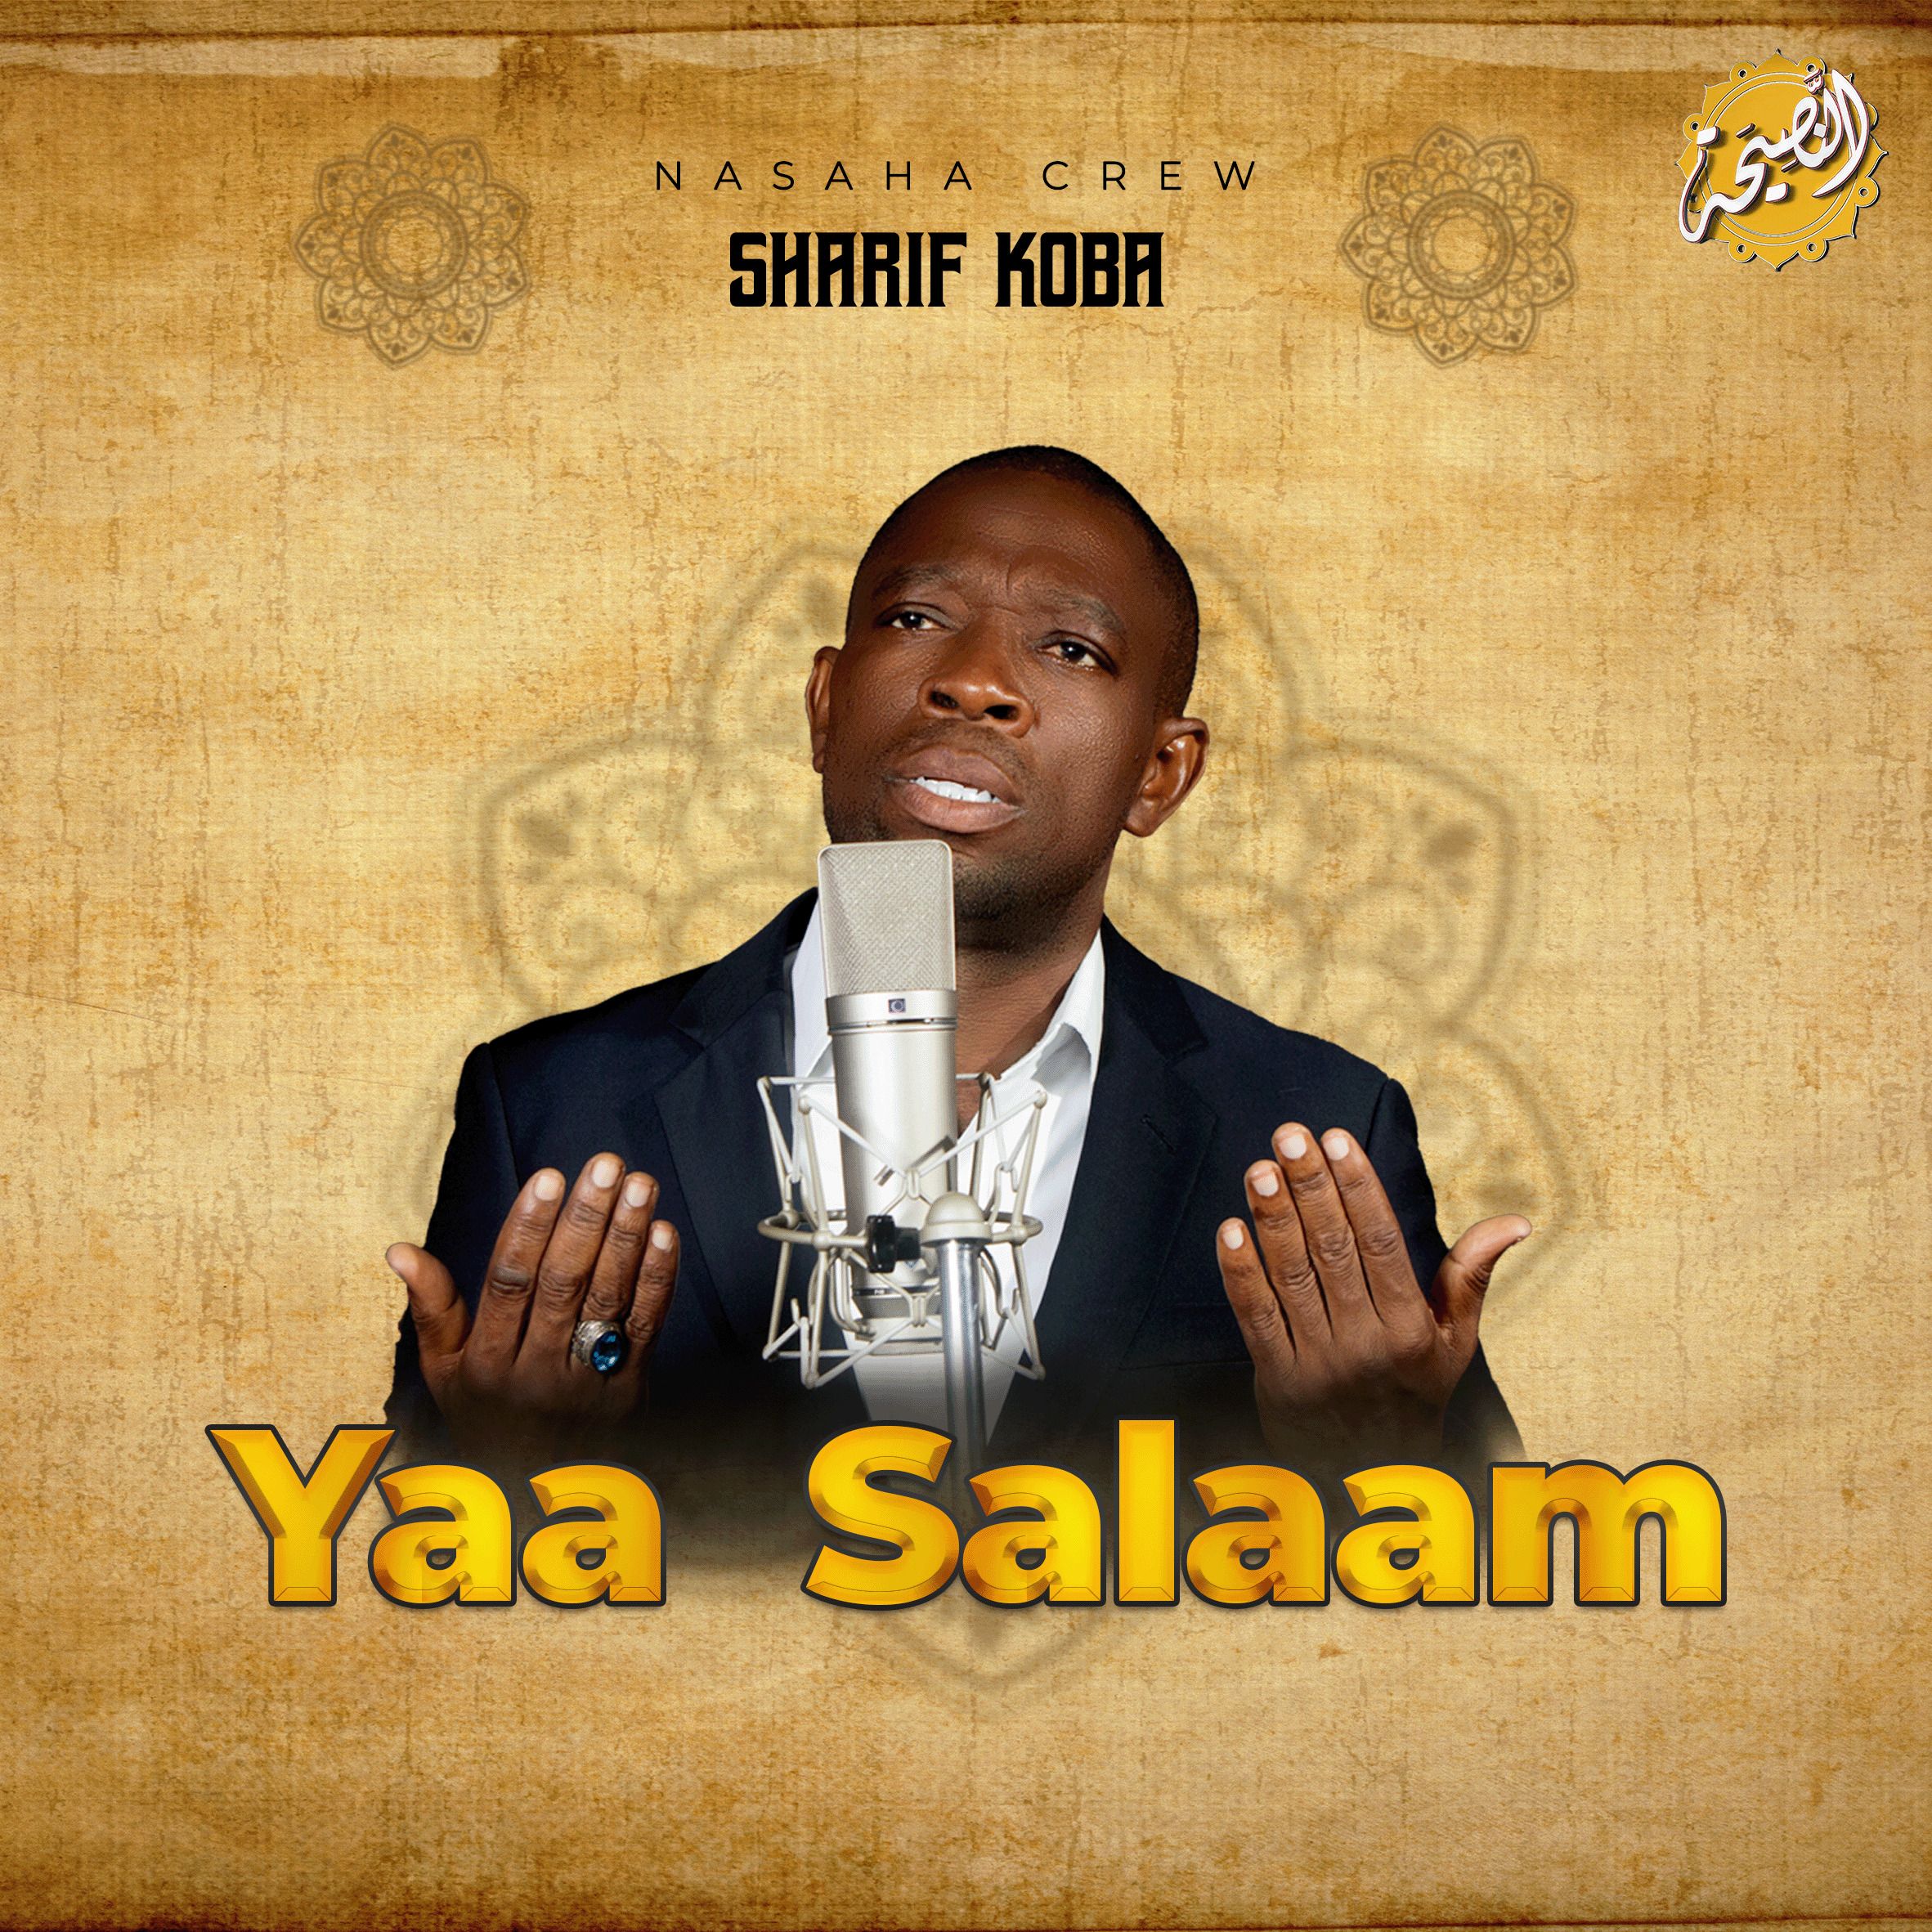 Nasaha Crew - Yaa Salaam (Sharif Koba)